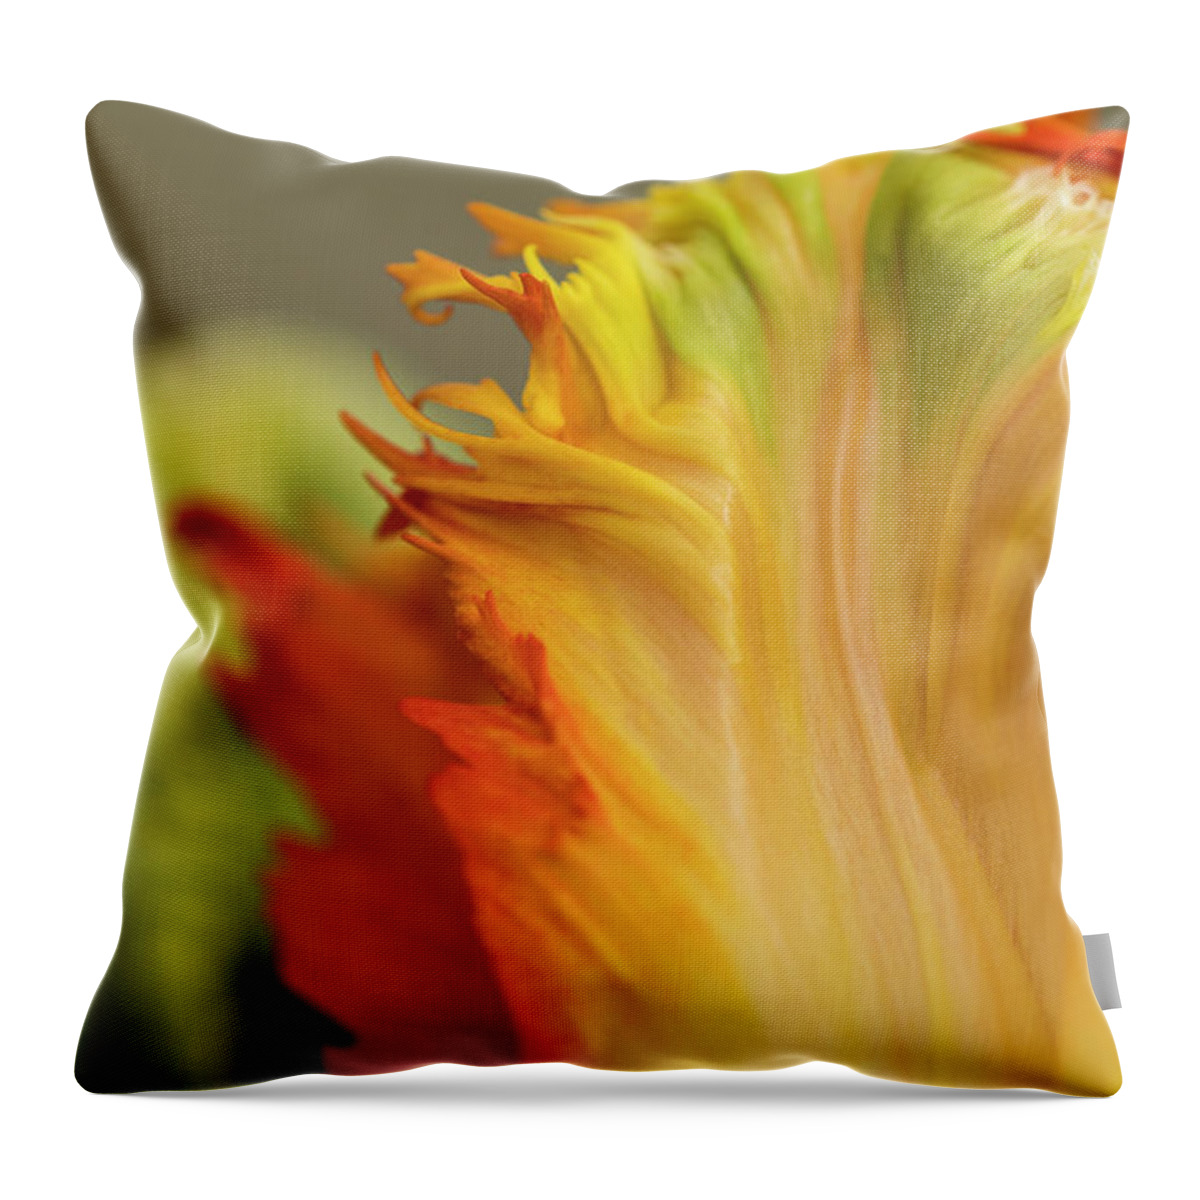 Astoria Throw Pillow featuring the photograph Tulip Petals by Robert Potts